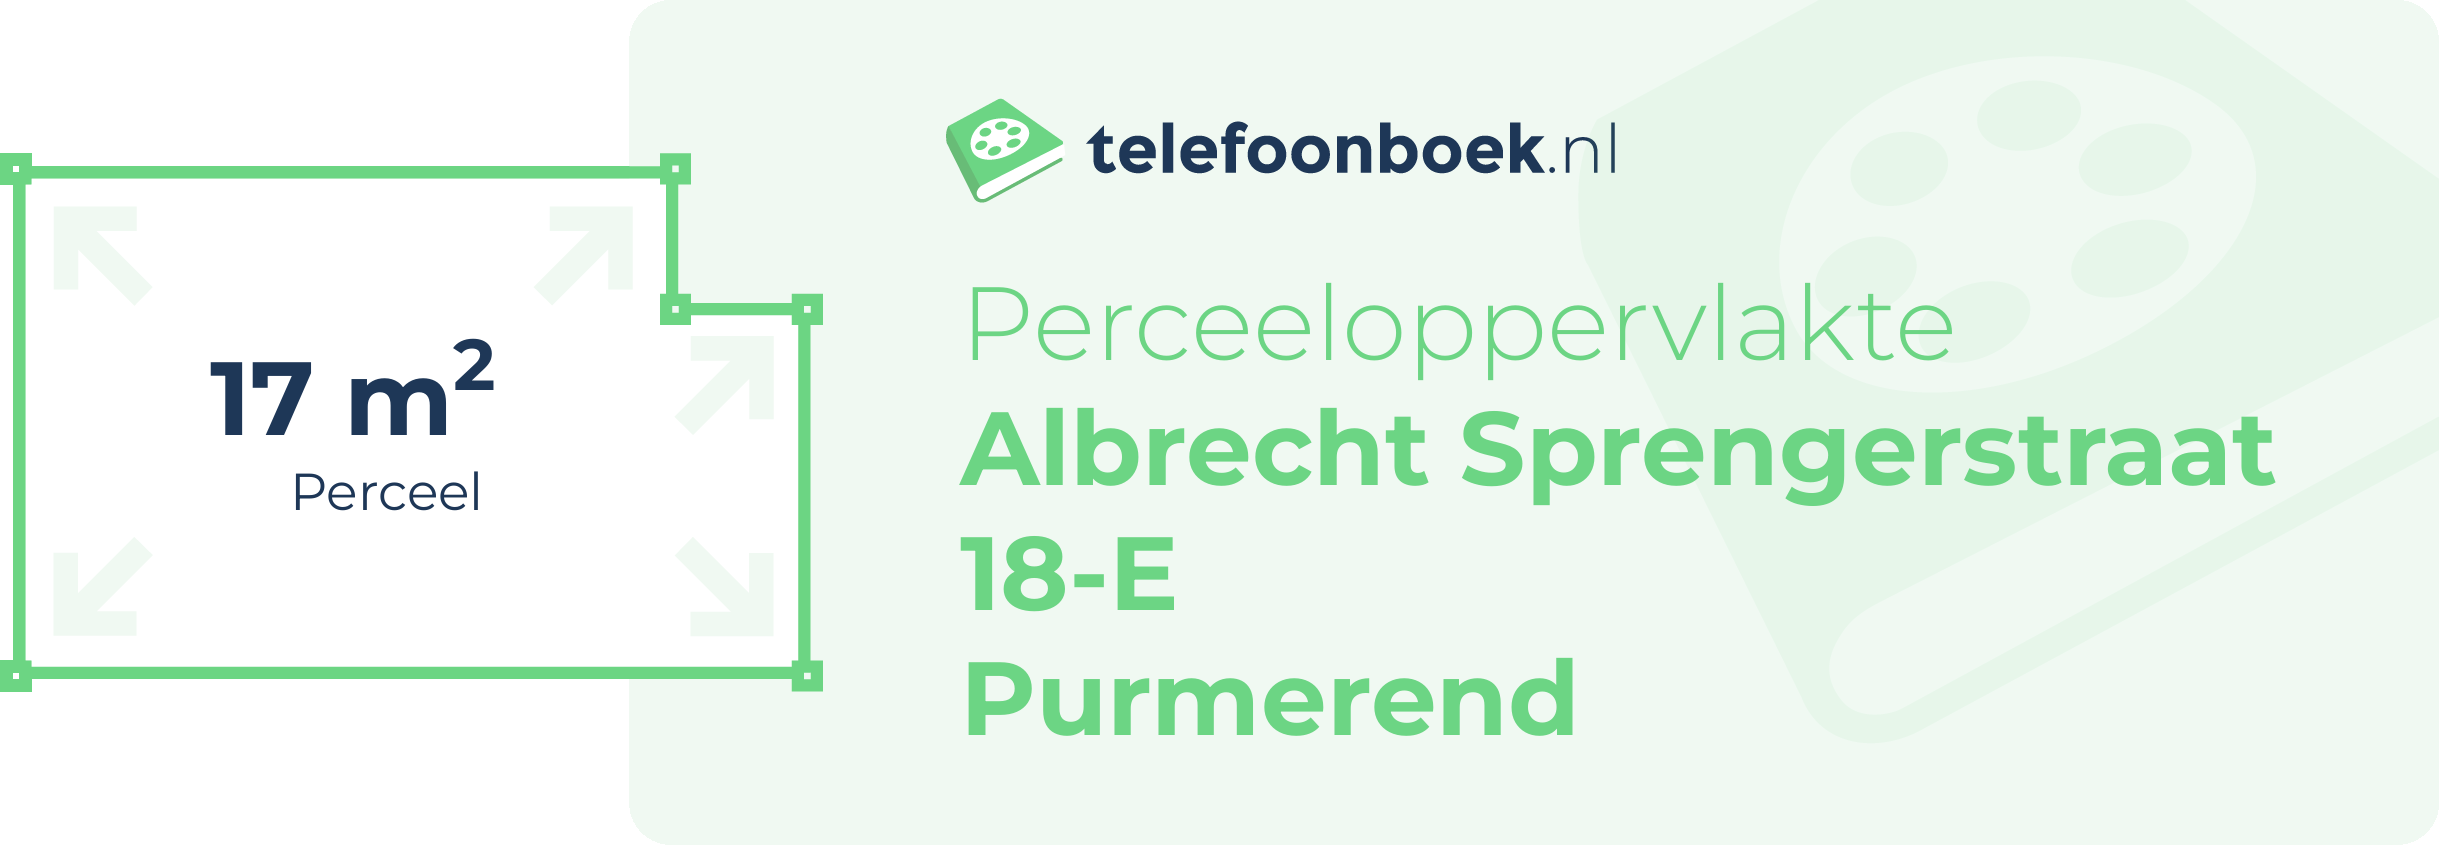 Perceeloppervlakte Albrecht Sprengerstraat 18-E Purmerend